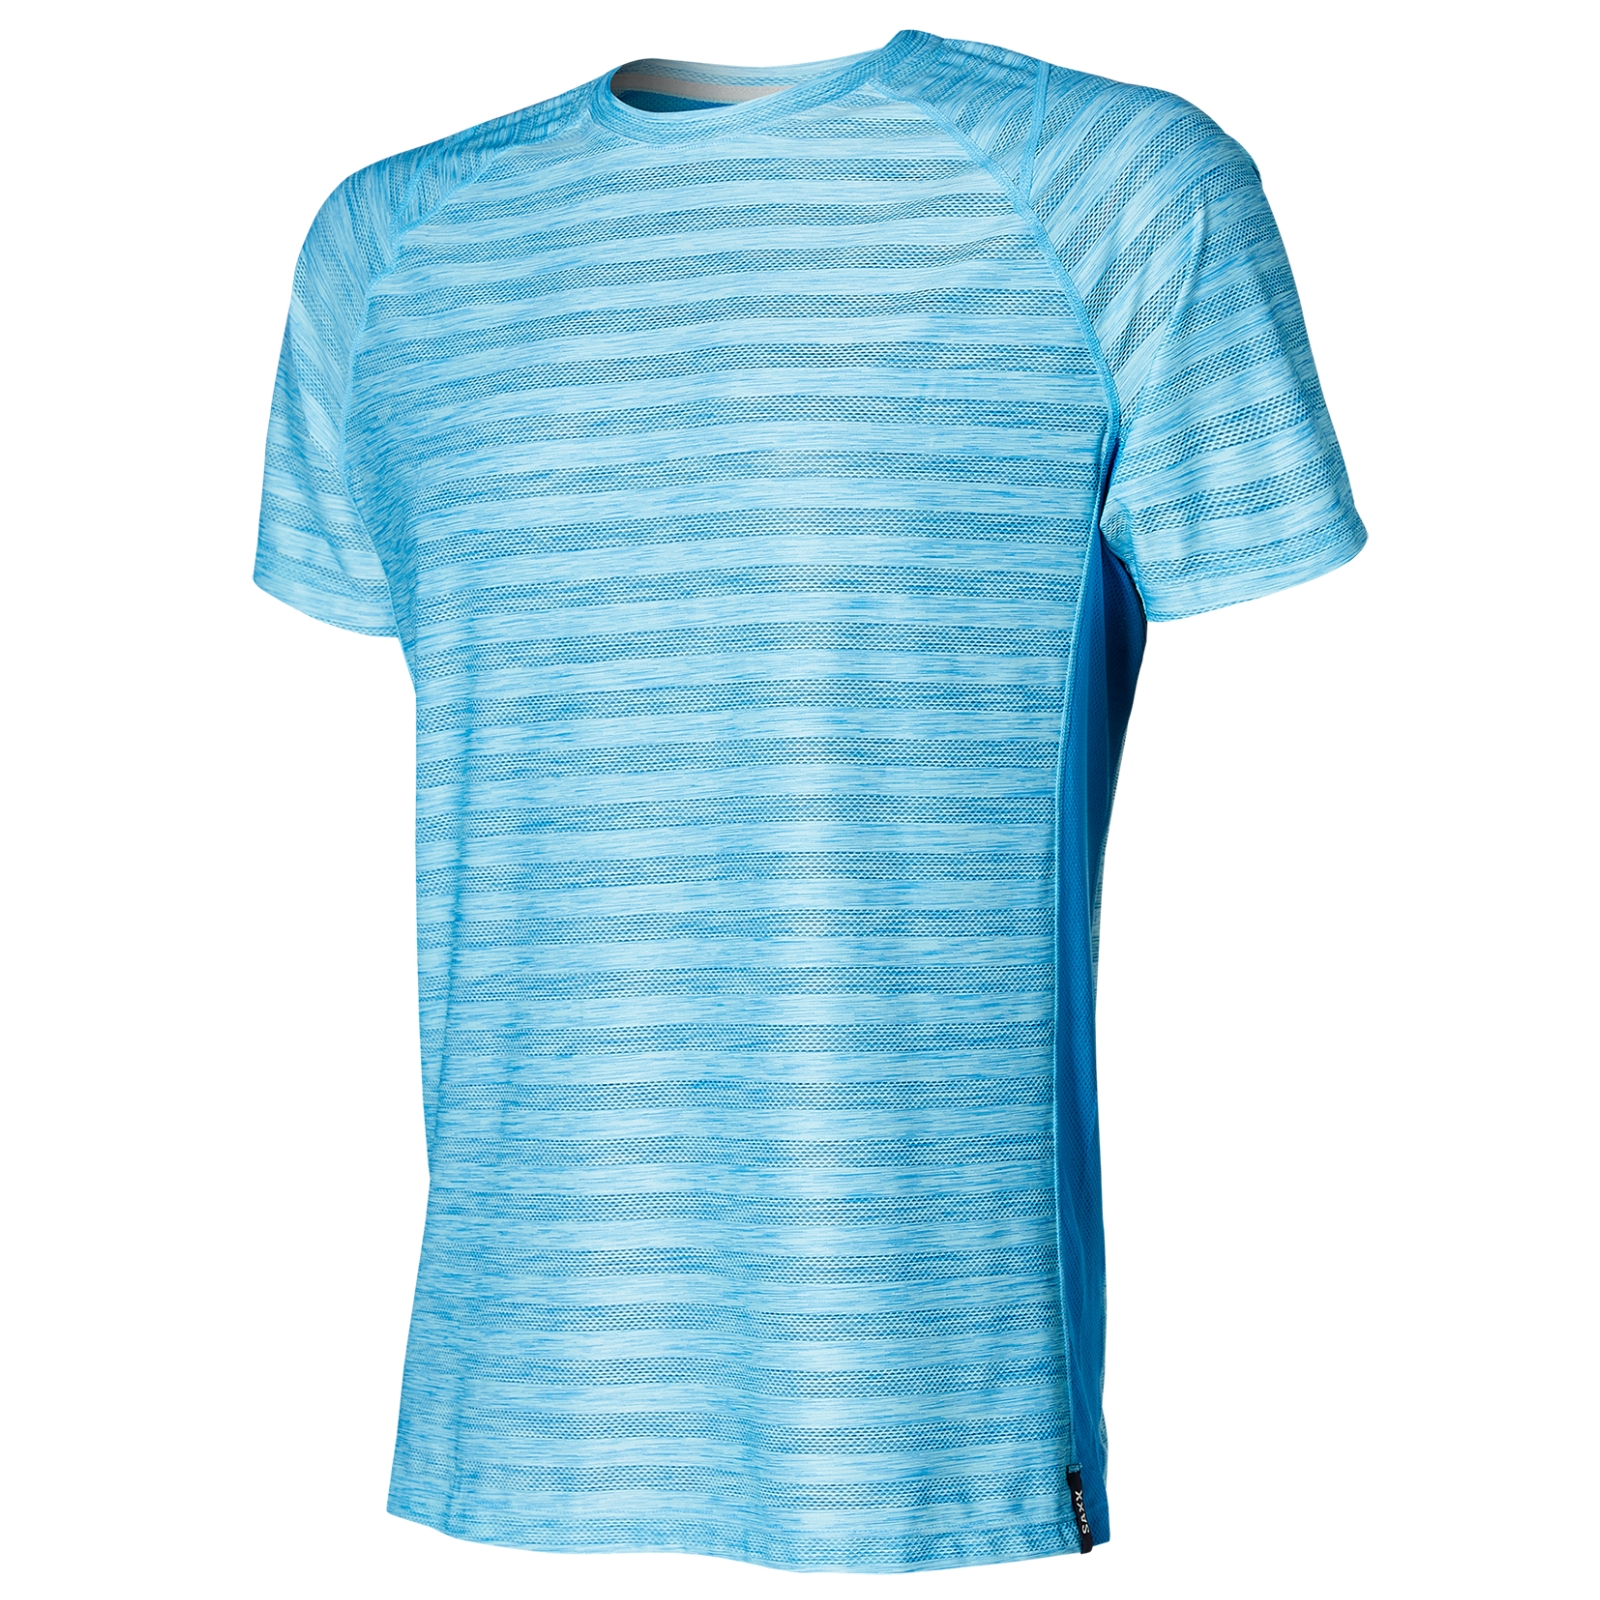 Image of Koszulka sportowa męska z krótkim rękawem z recyklingu SAXX HOT SHOT - niebieska